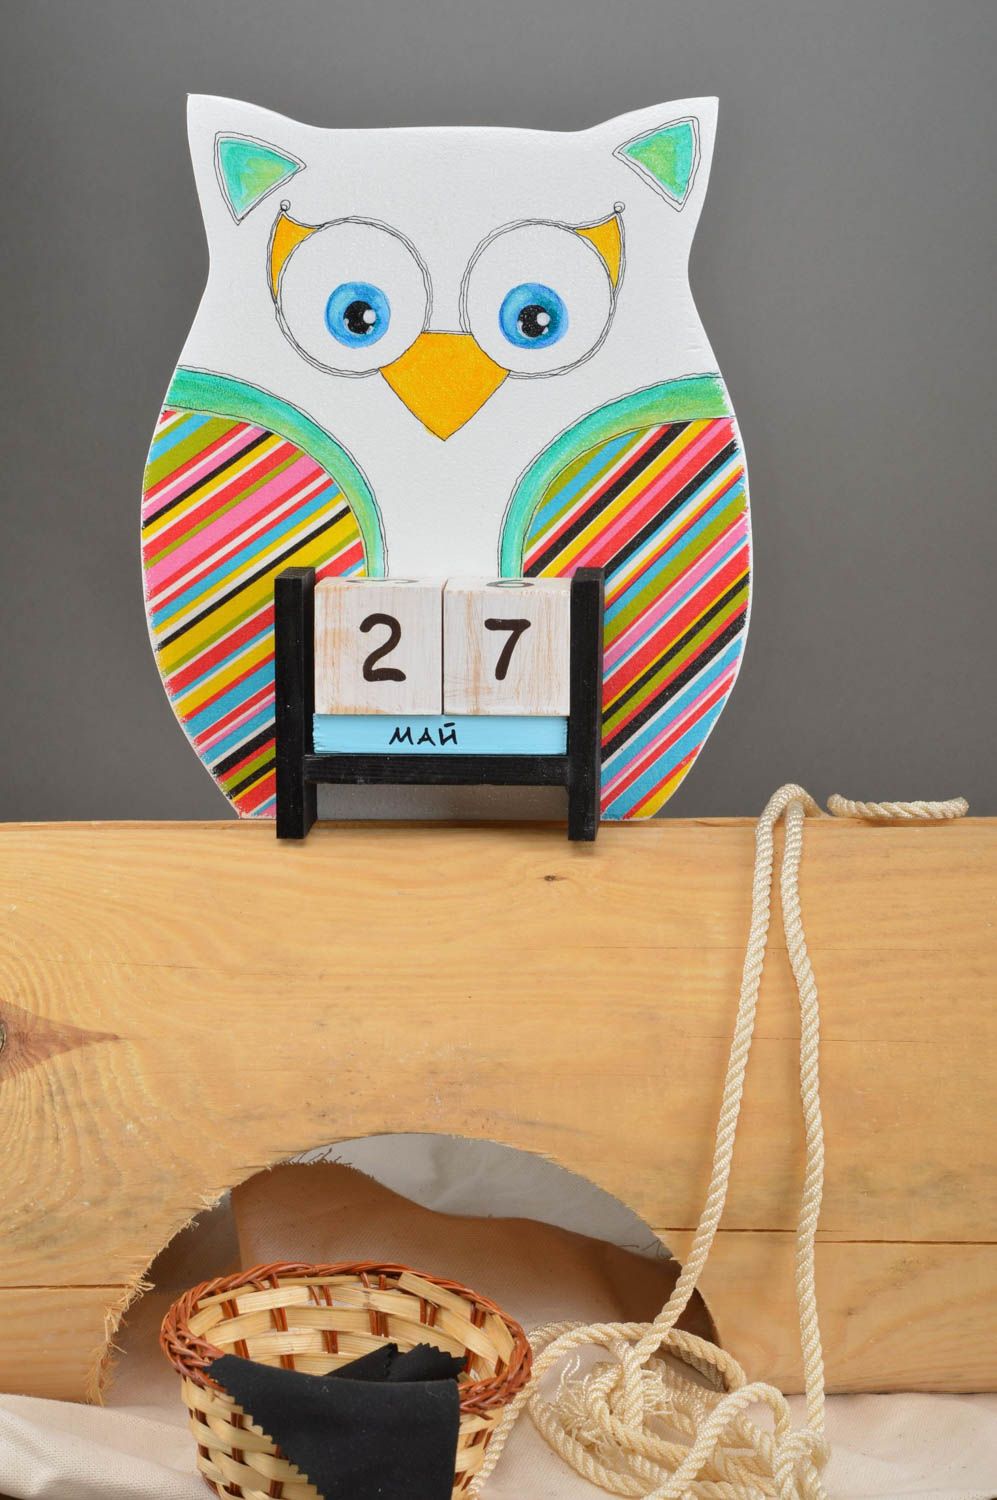 Детский календарь в виде совы из фанеры декупаж в полоску ручной работы фото 1